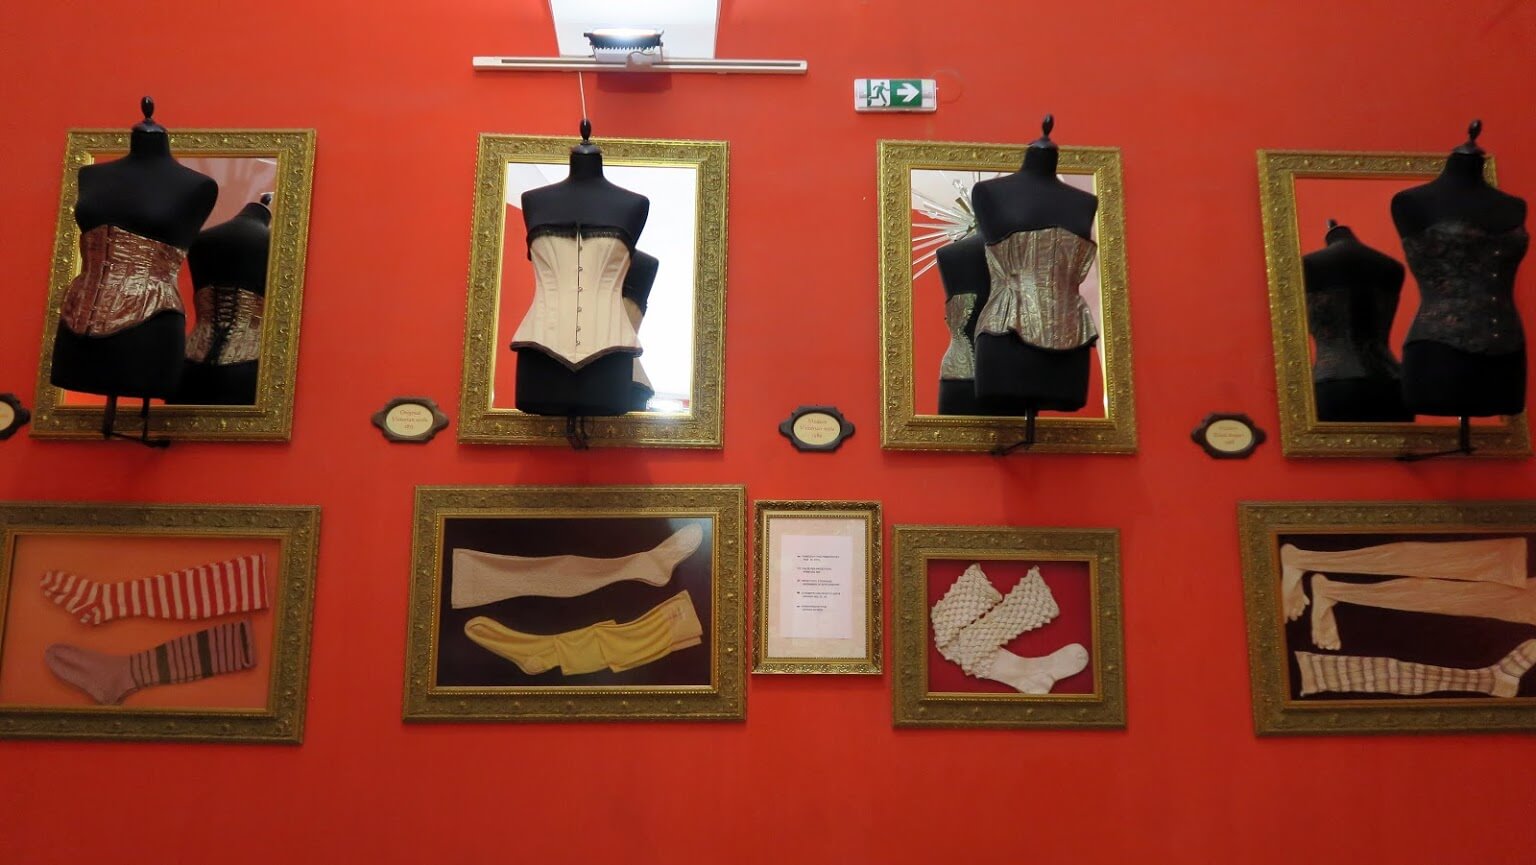 Gallery: Музей секс-машин в Праге - 7туканов | Поделись cвоими опытом путешествий